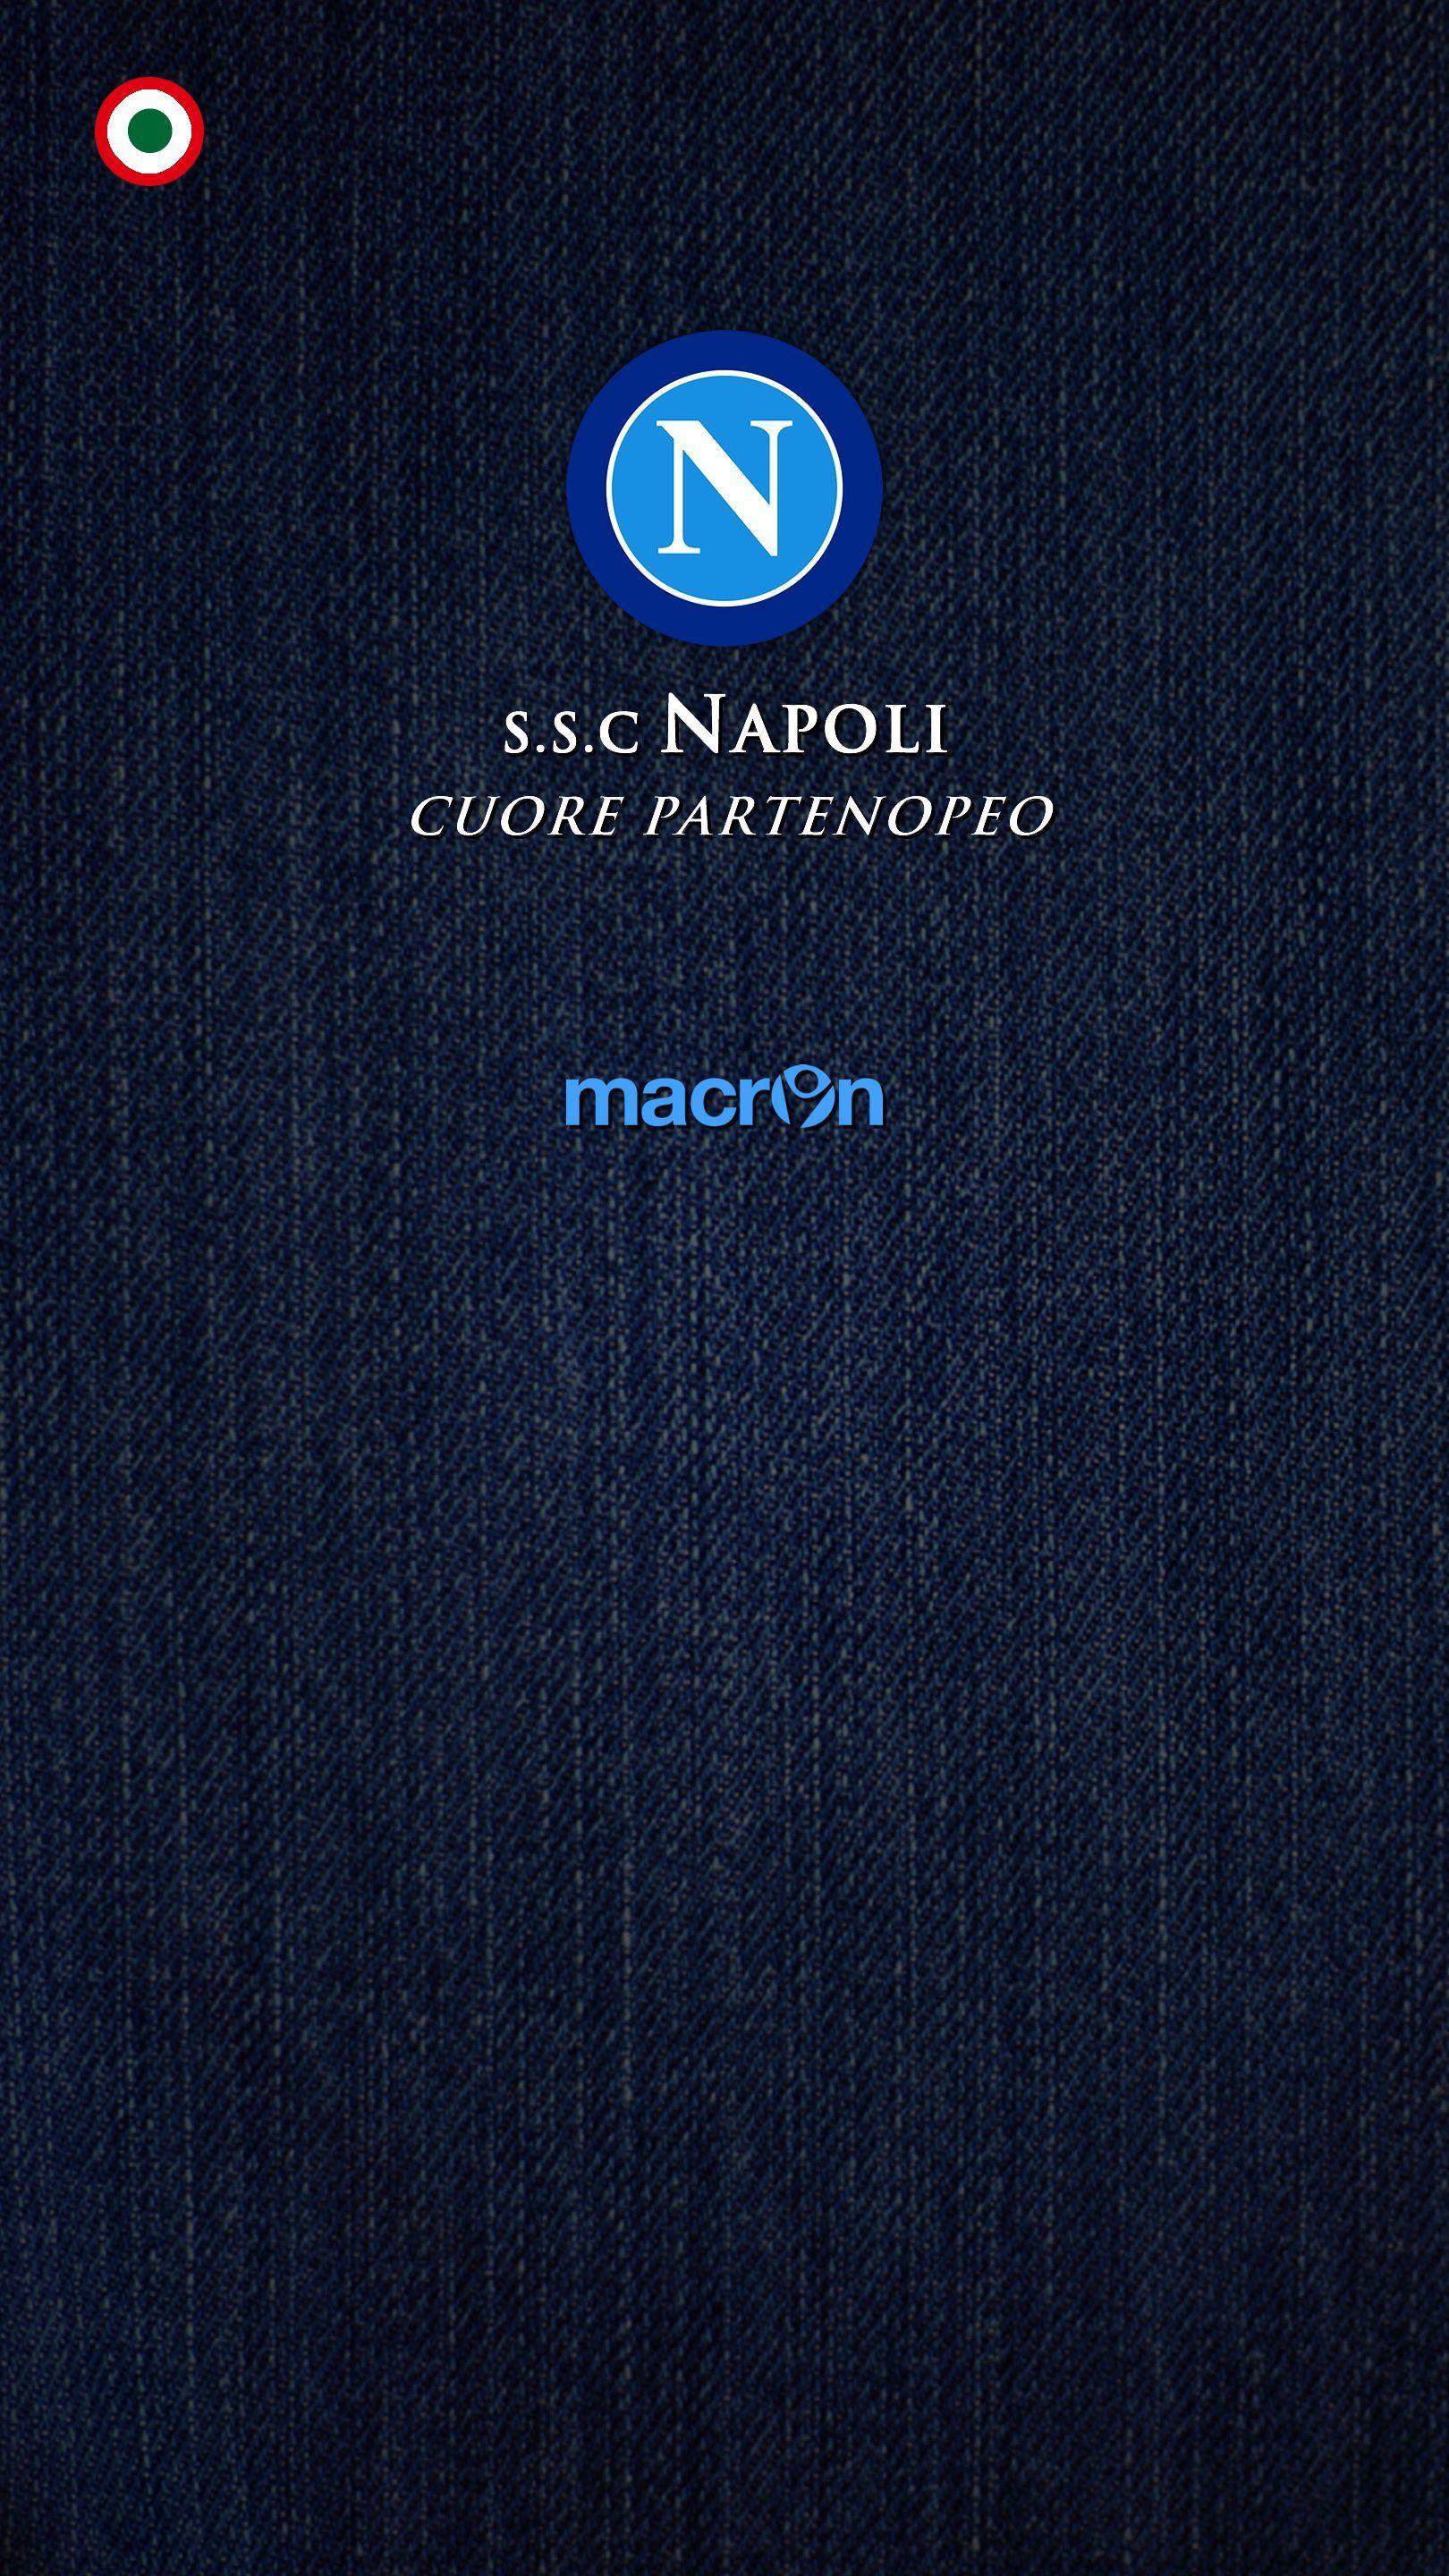 Ssc Napoli Wallpaper